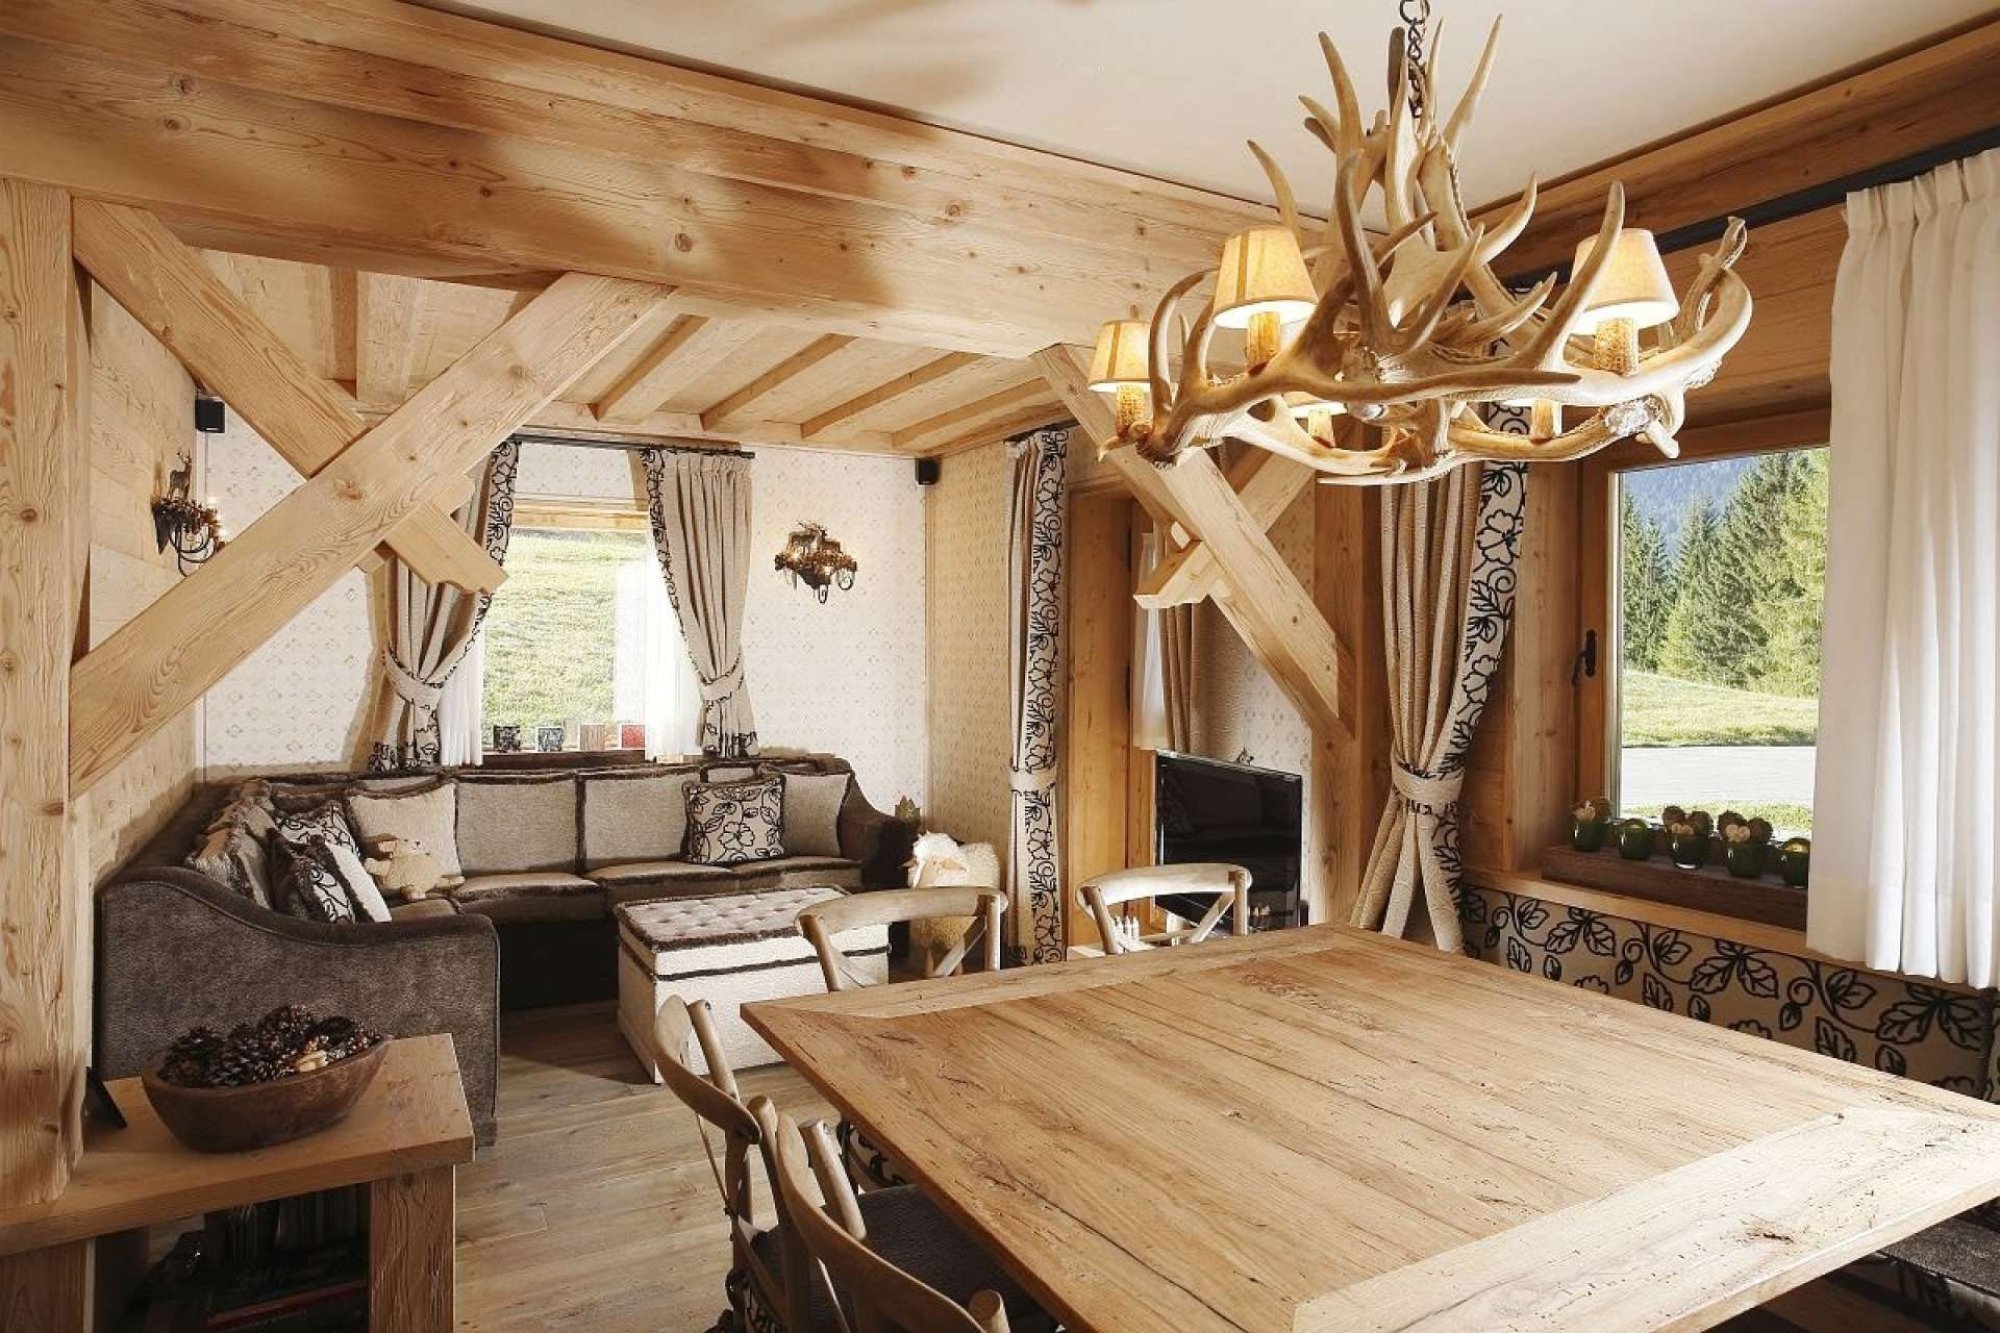 Стили интерьера деревянного дома. Интерьер в деревянном доме. Дерево в интерьере. Деревянный стиль в интерьере. Красивые интерьеры деревянных домов.